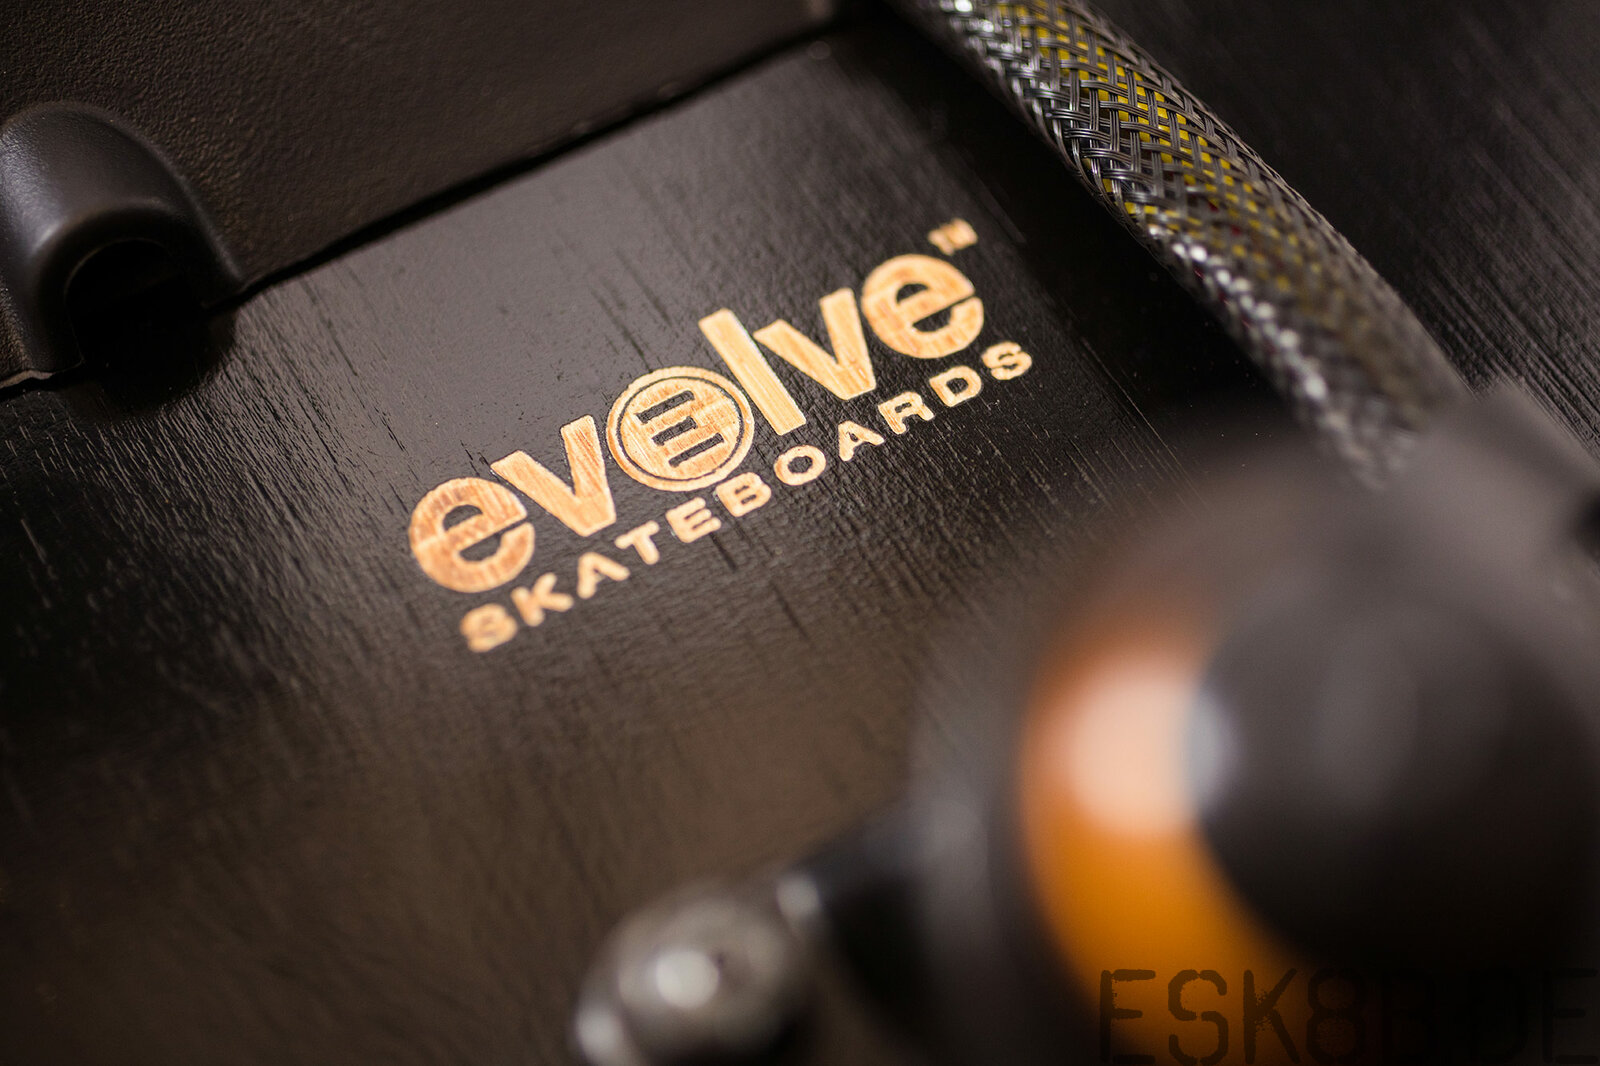 Evolve ONE Elektroskateboard
http://www.evolveskateboards.de/